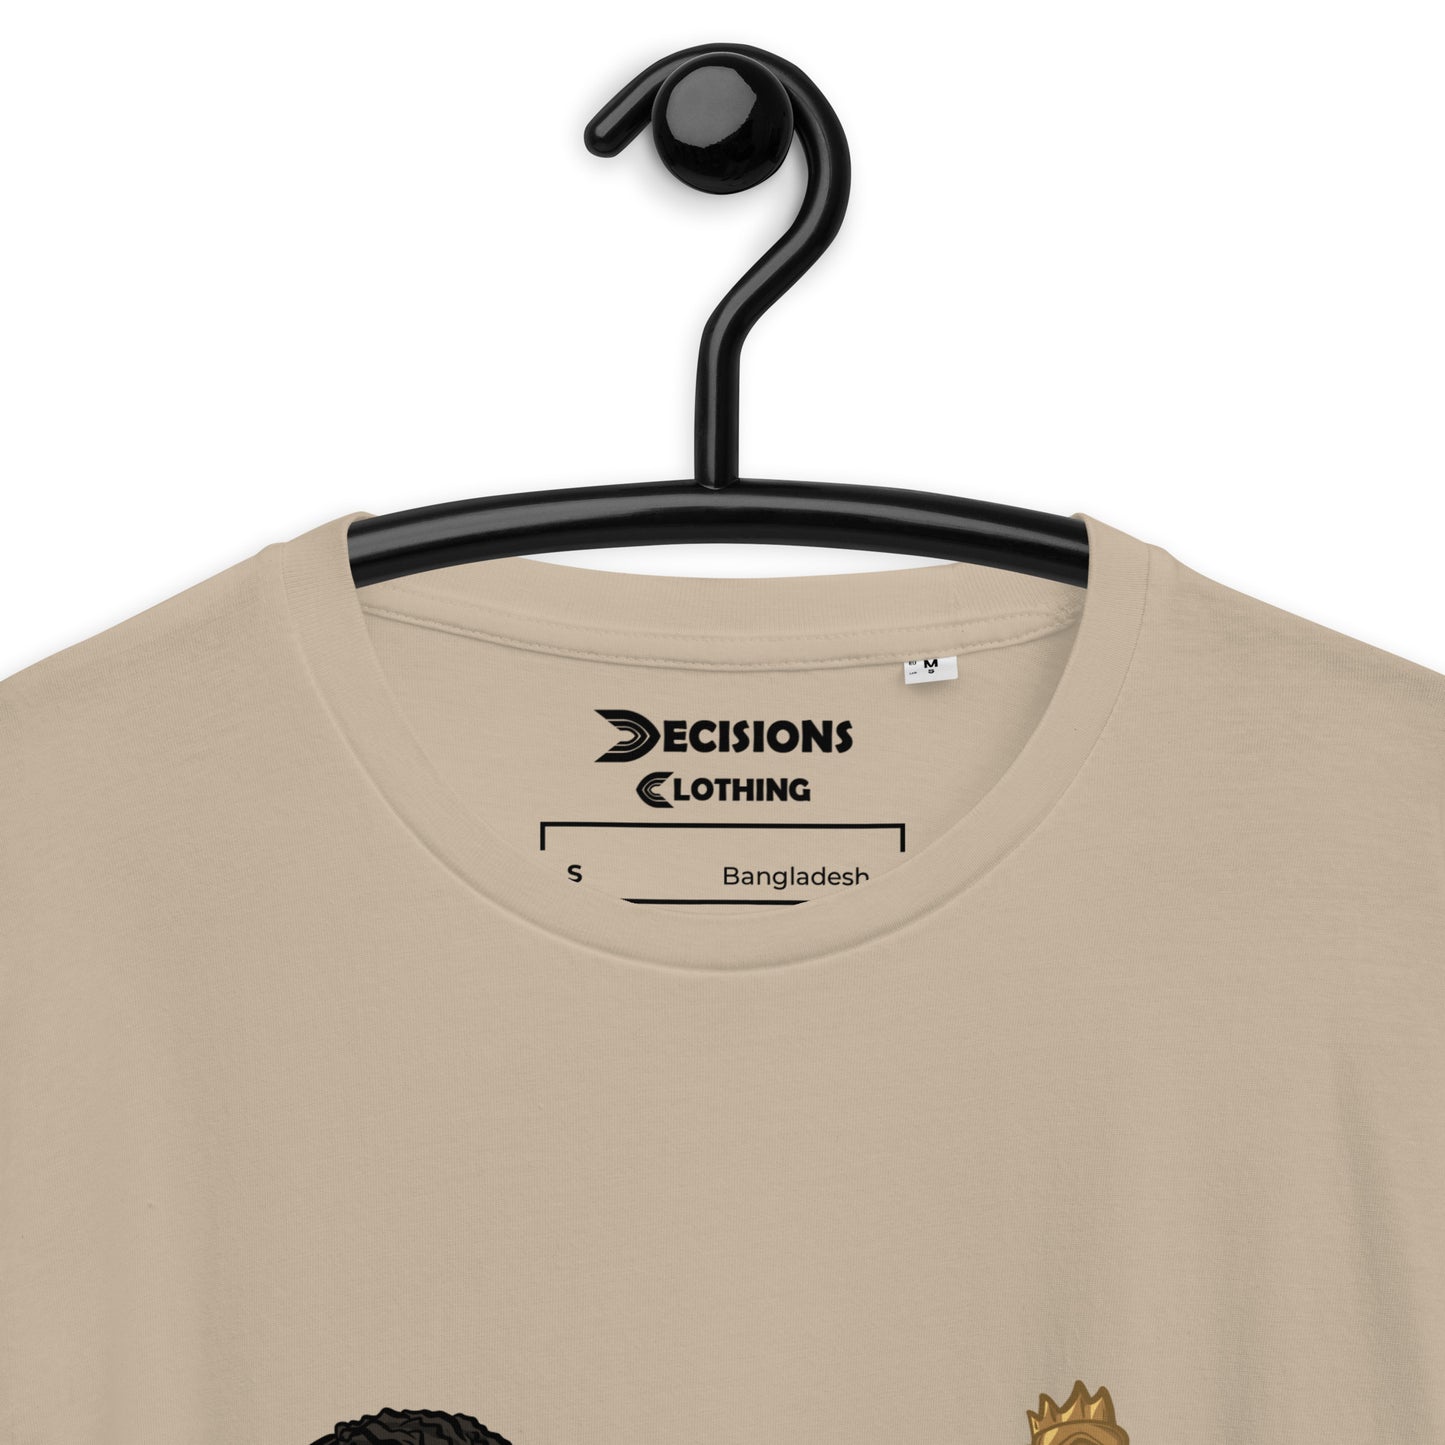 Mirage Nessie T-Shirt (Apex Legends)